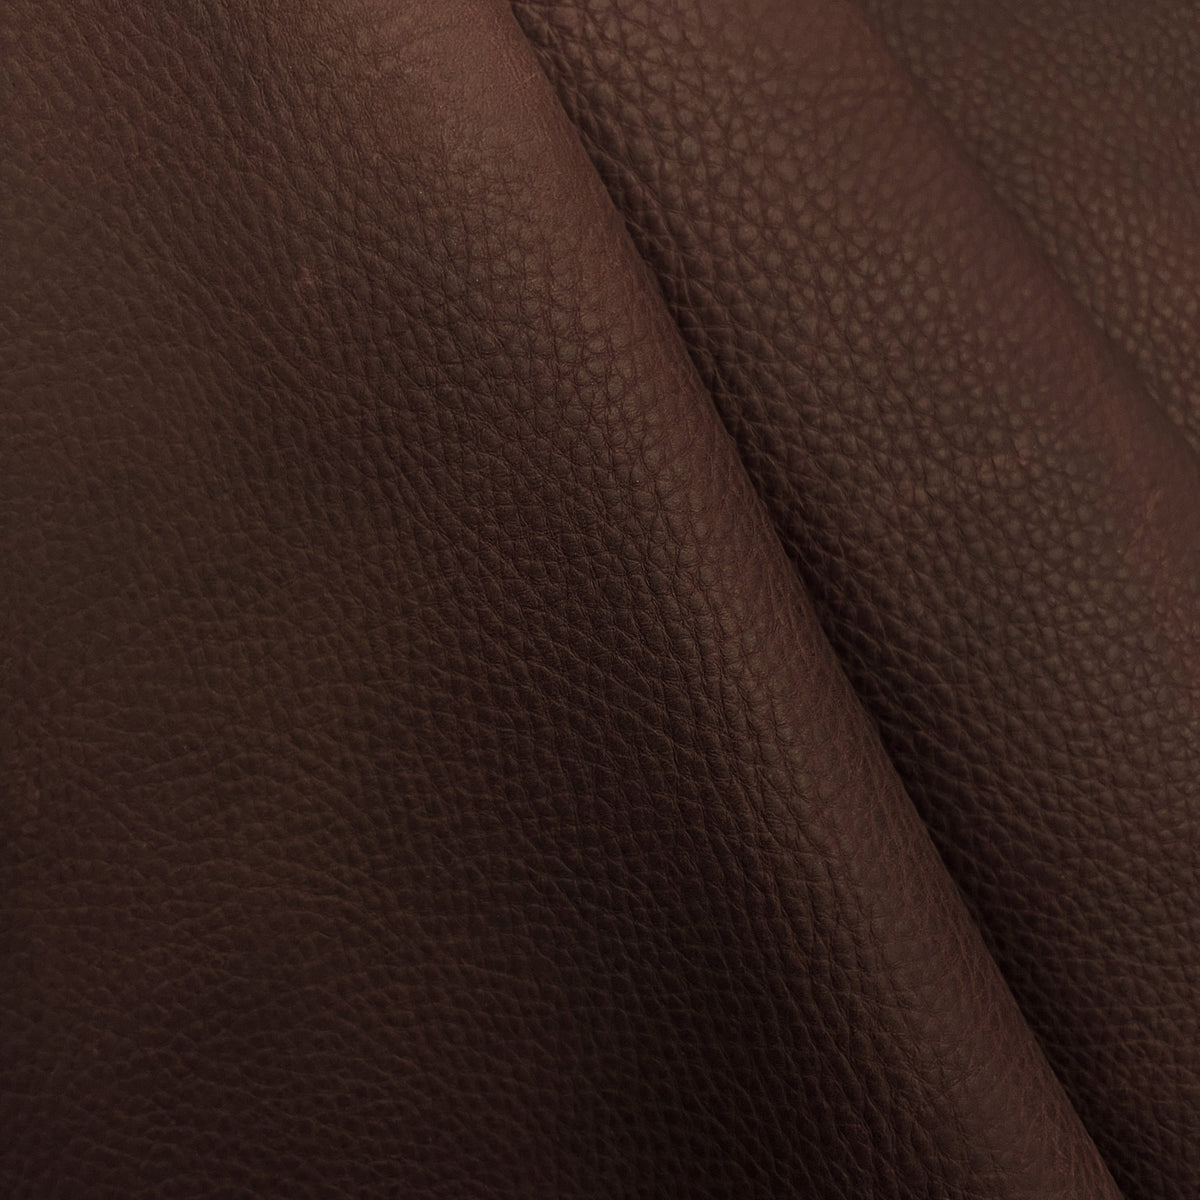 VEG TAN floral metallic brown leather skin, western printed vintage hide